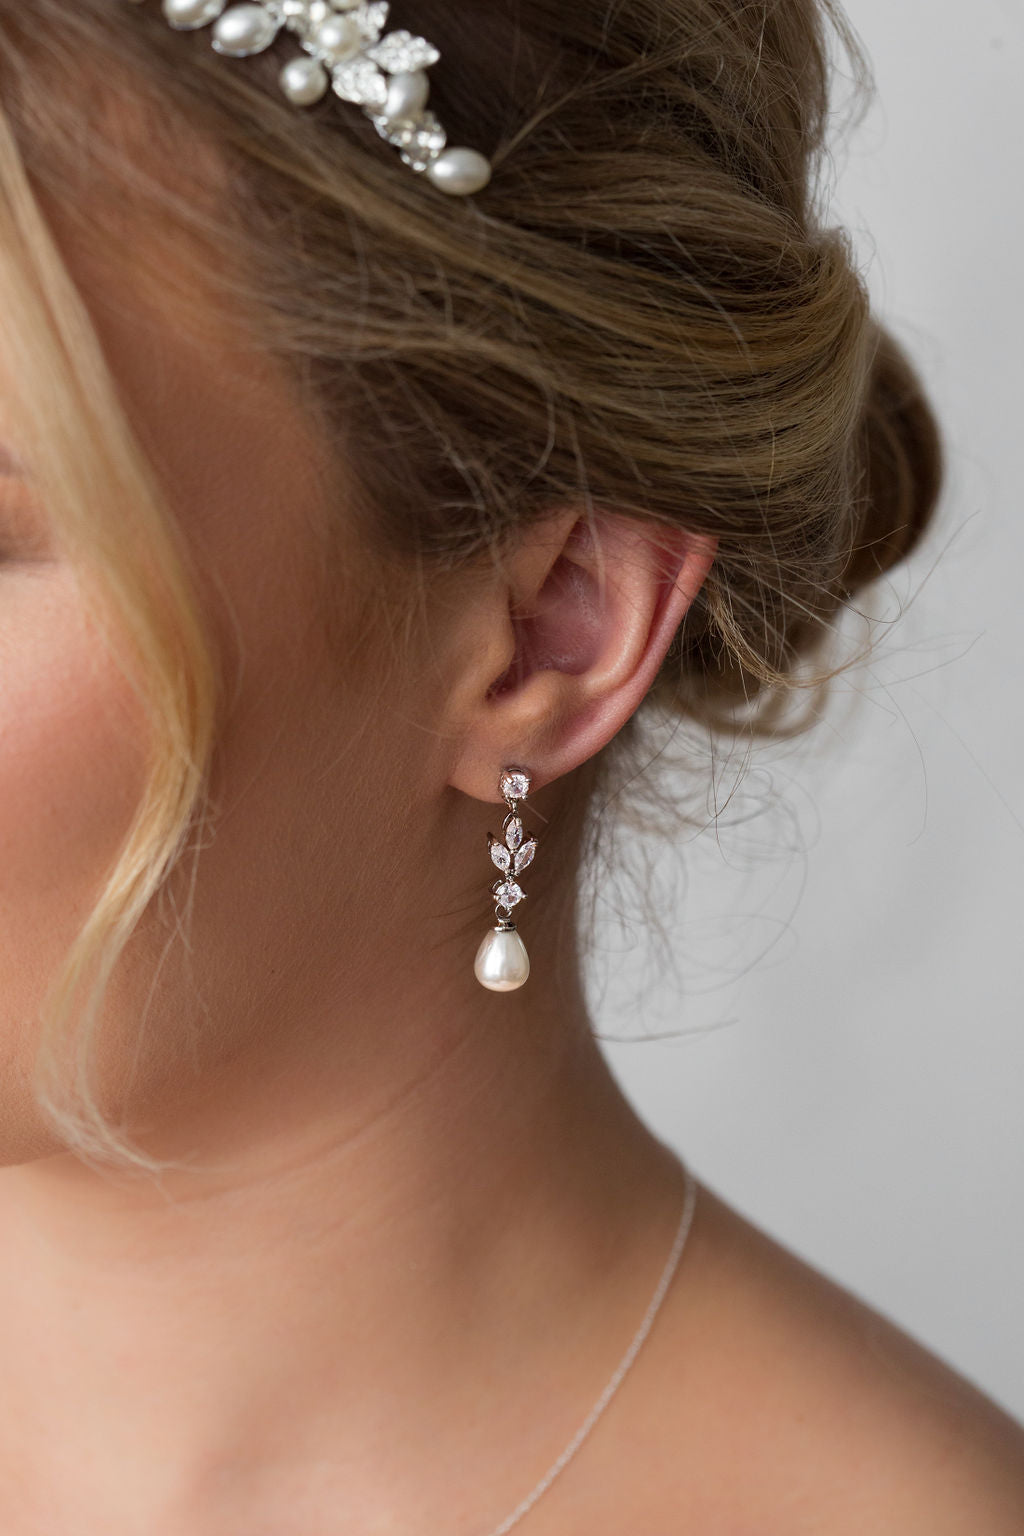 Glamorous Bridal Earrings: Our Top 5 Best Sellers